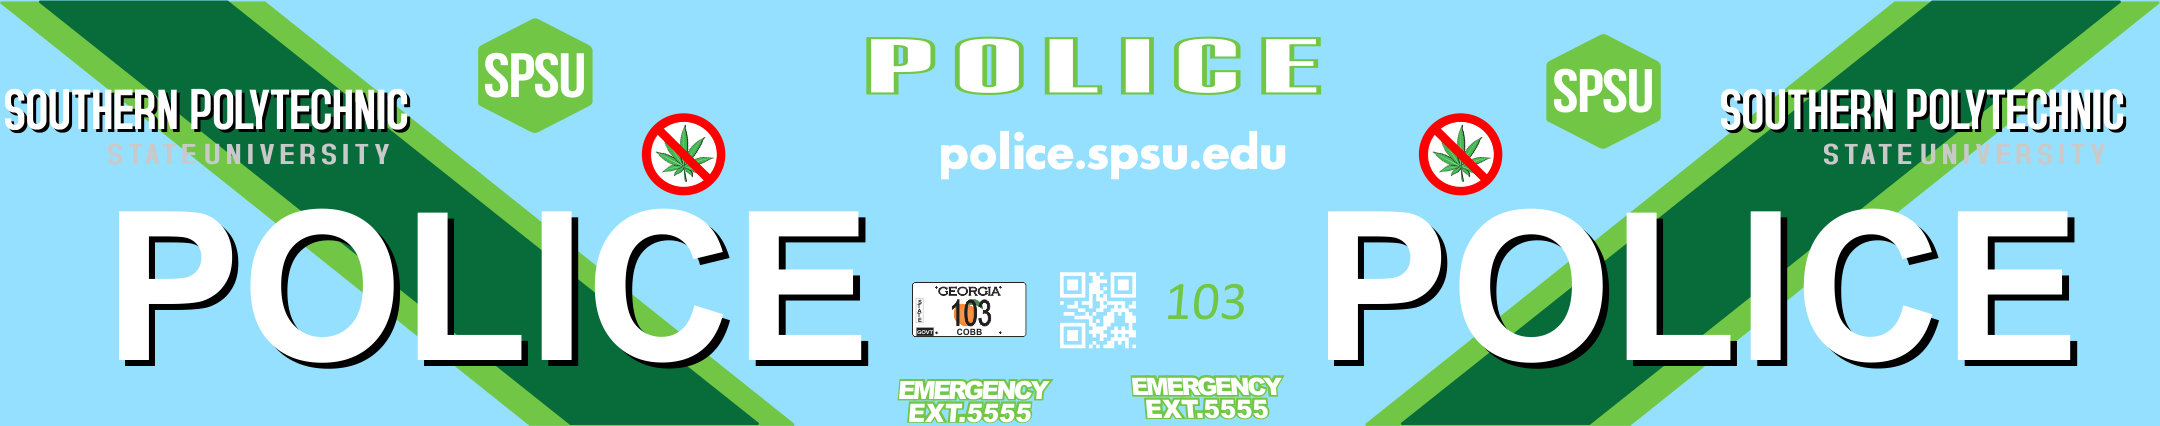 1/24-1/25 Southern Polytechnic State University Police